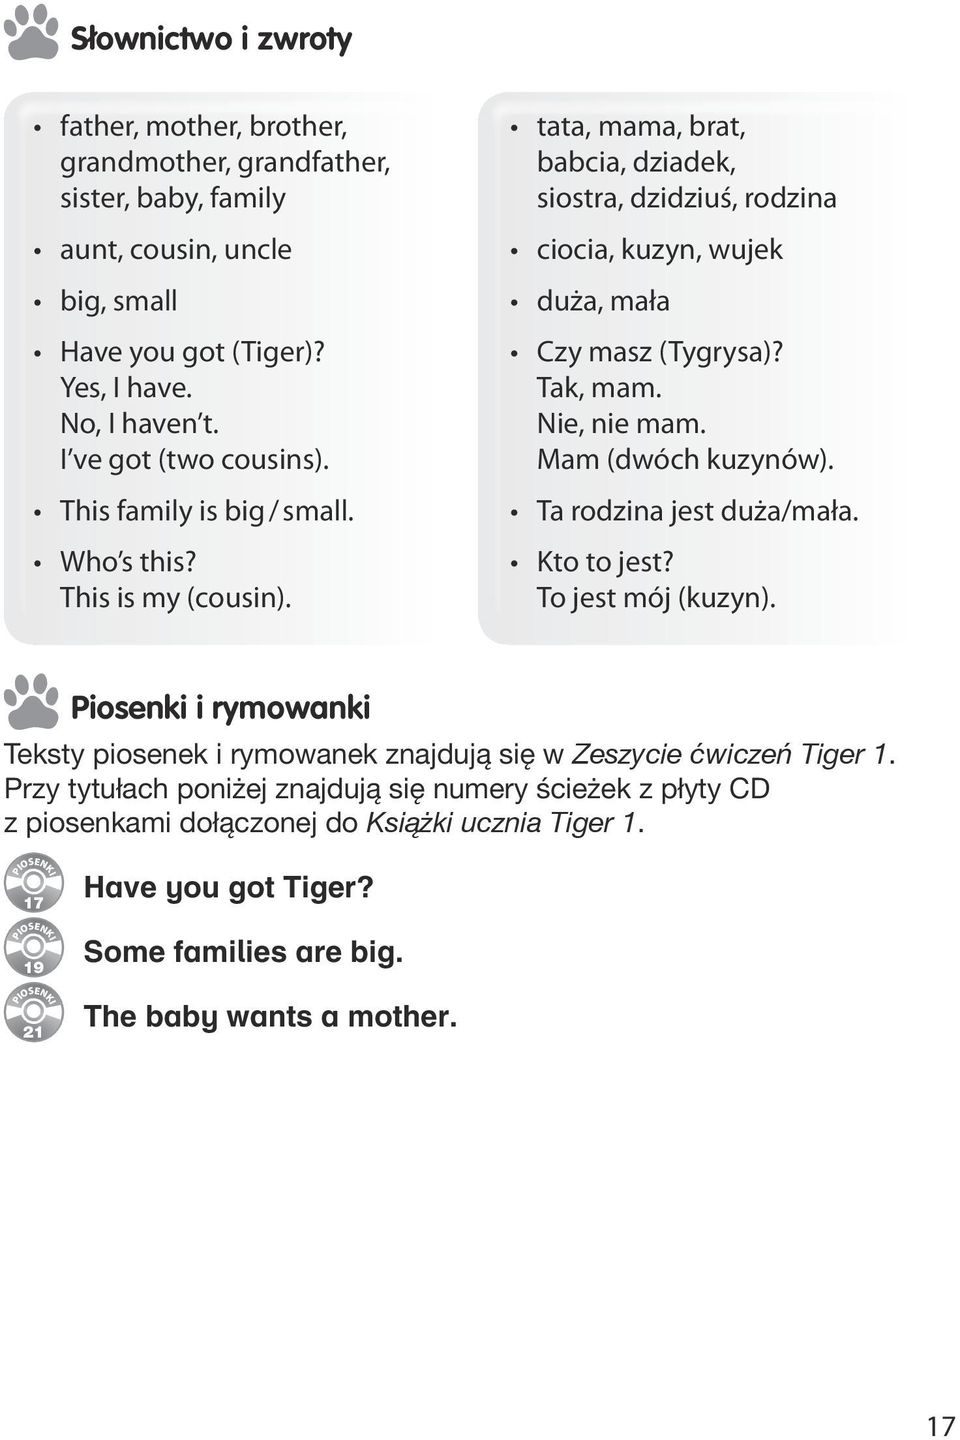 Struktura Książki ucznia Tiger 1 - PDF Darmowe pobieranie